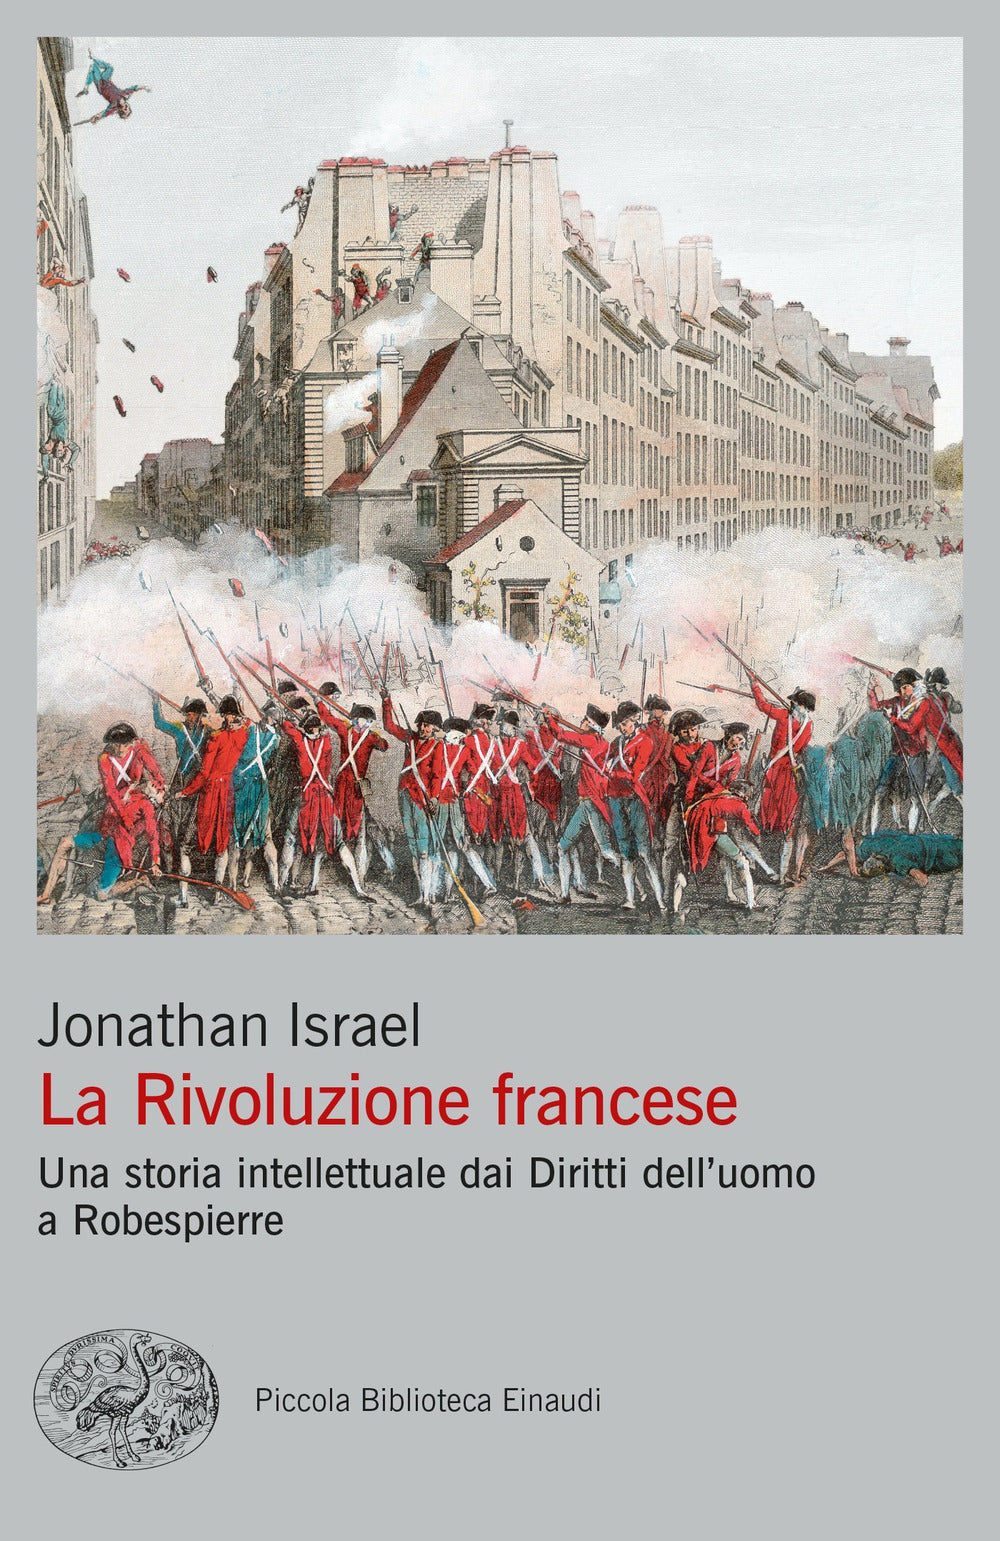 La Rivoluzione francese. Una storia intellettuale dai Diritti dell'uomo a Robespierre